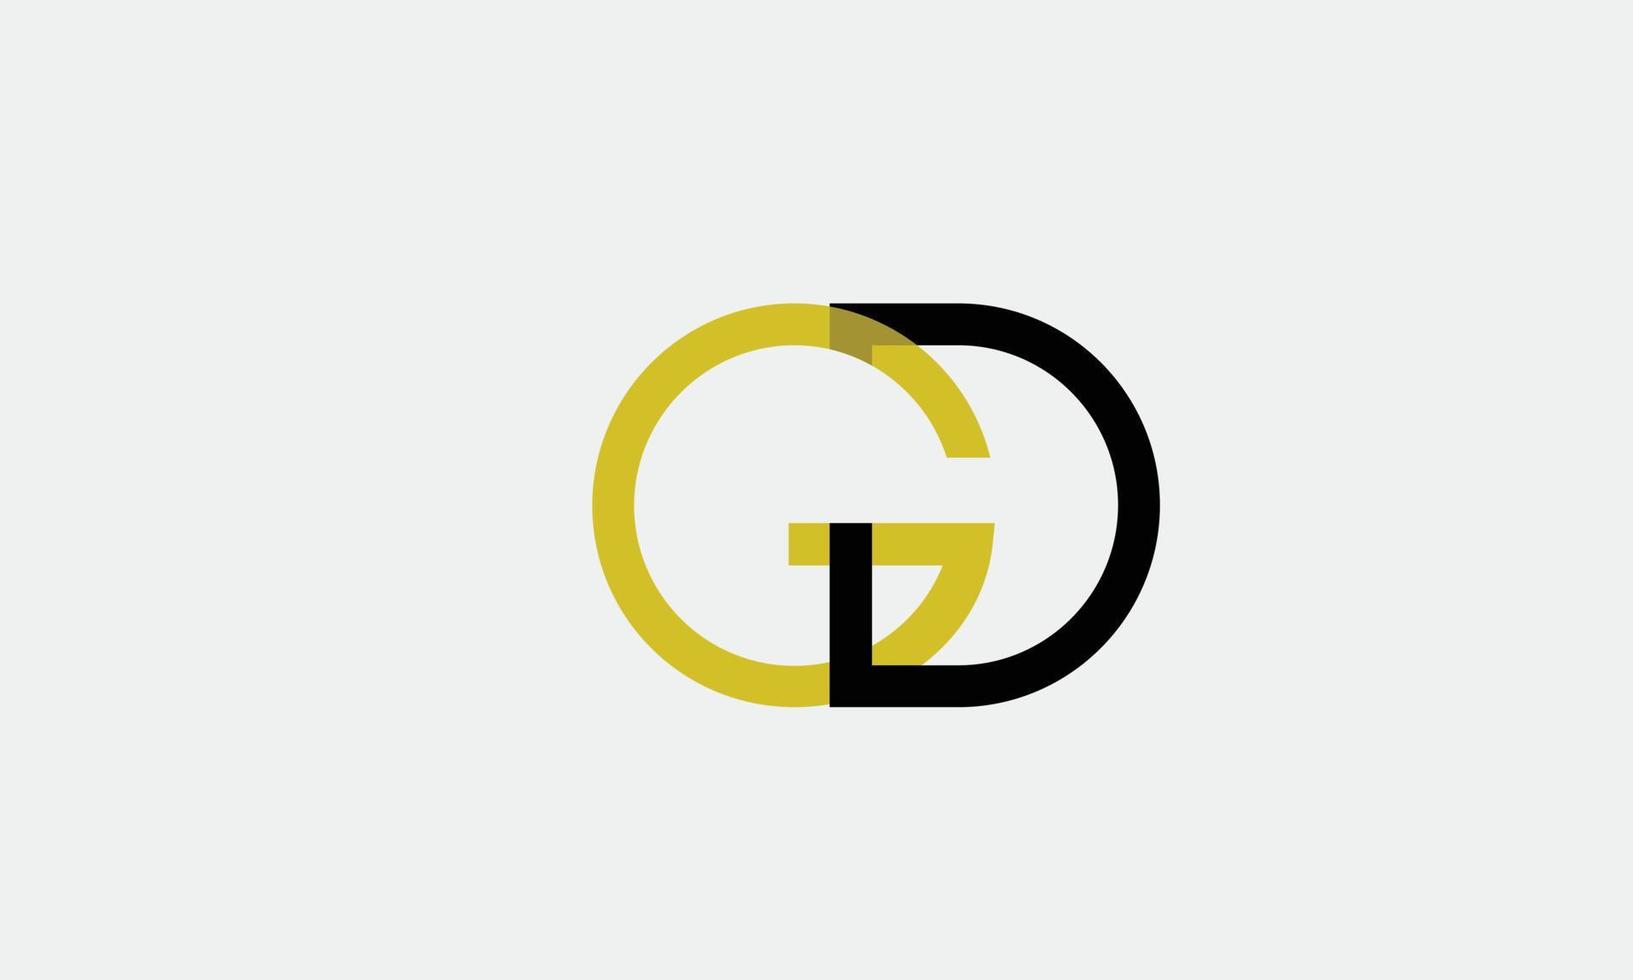 letras do alfabeto iniciais monograma logotipo gd, dg, g e d vetor